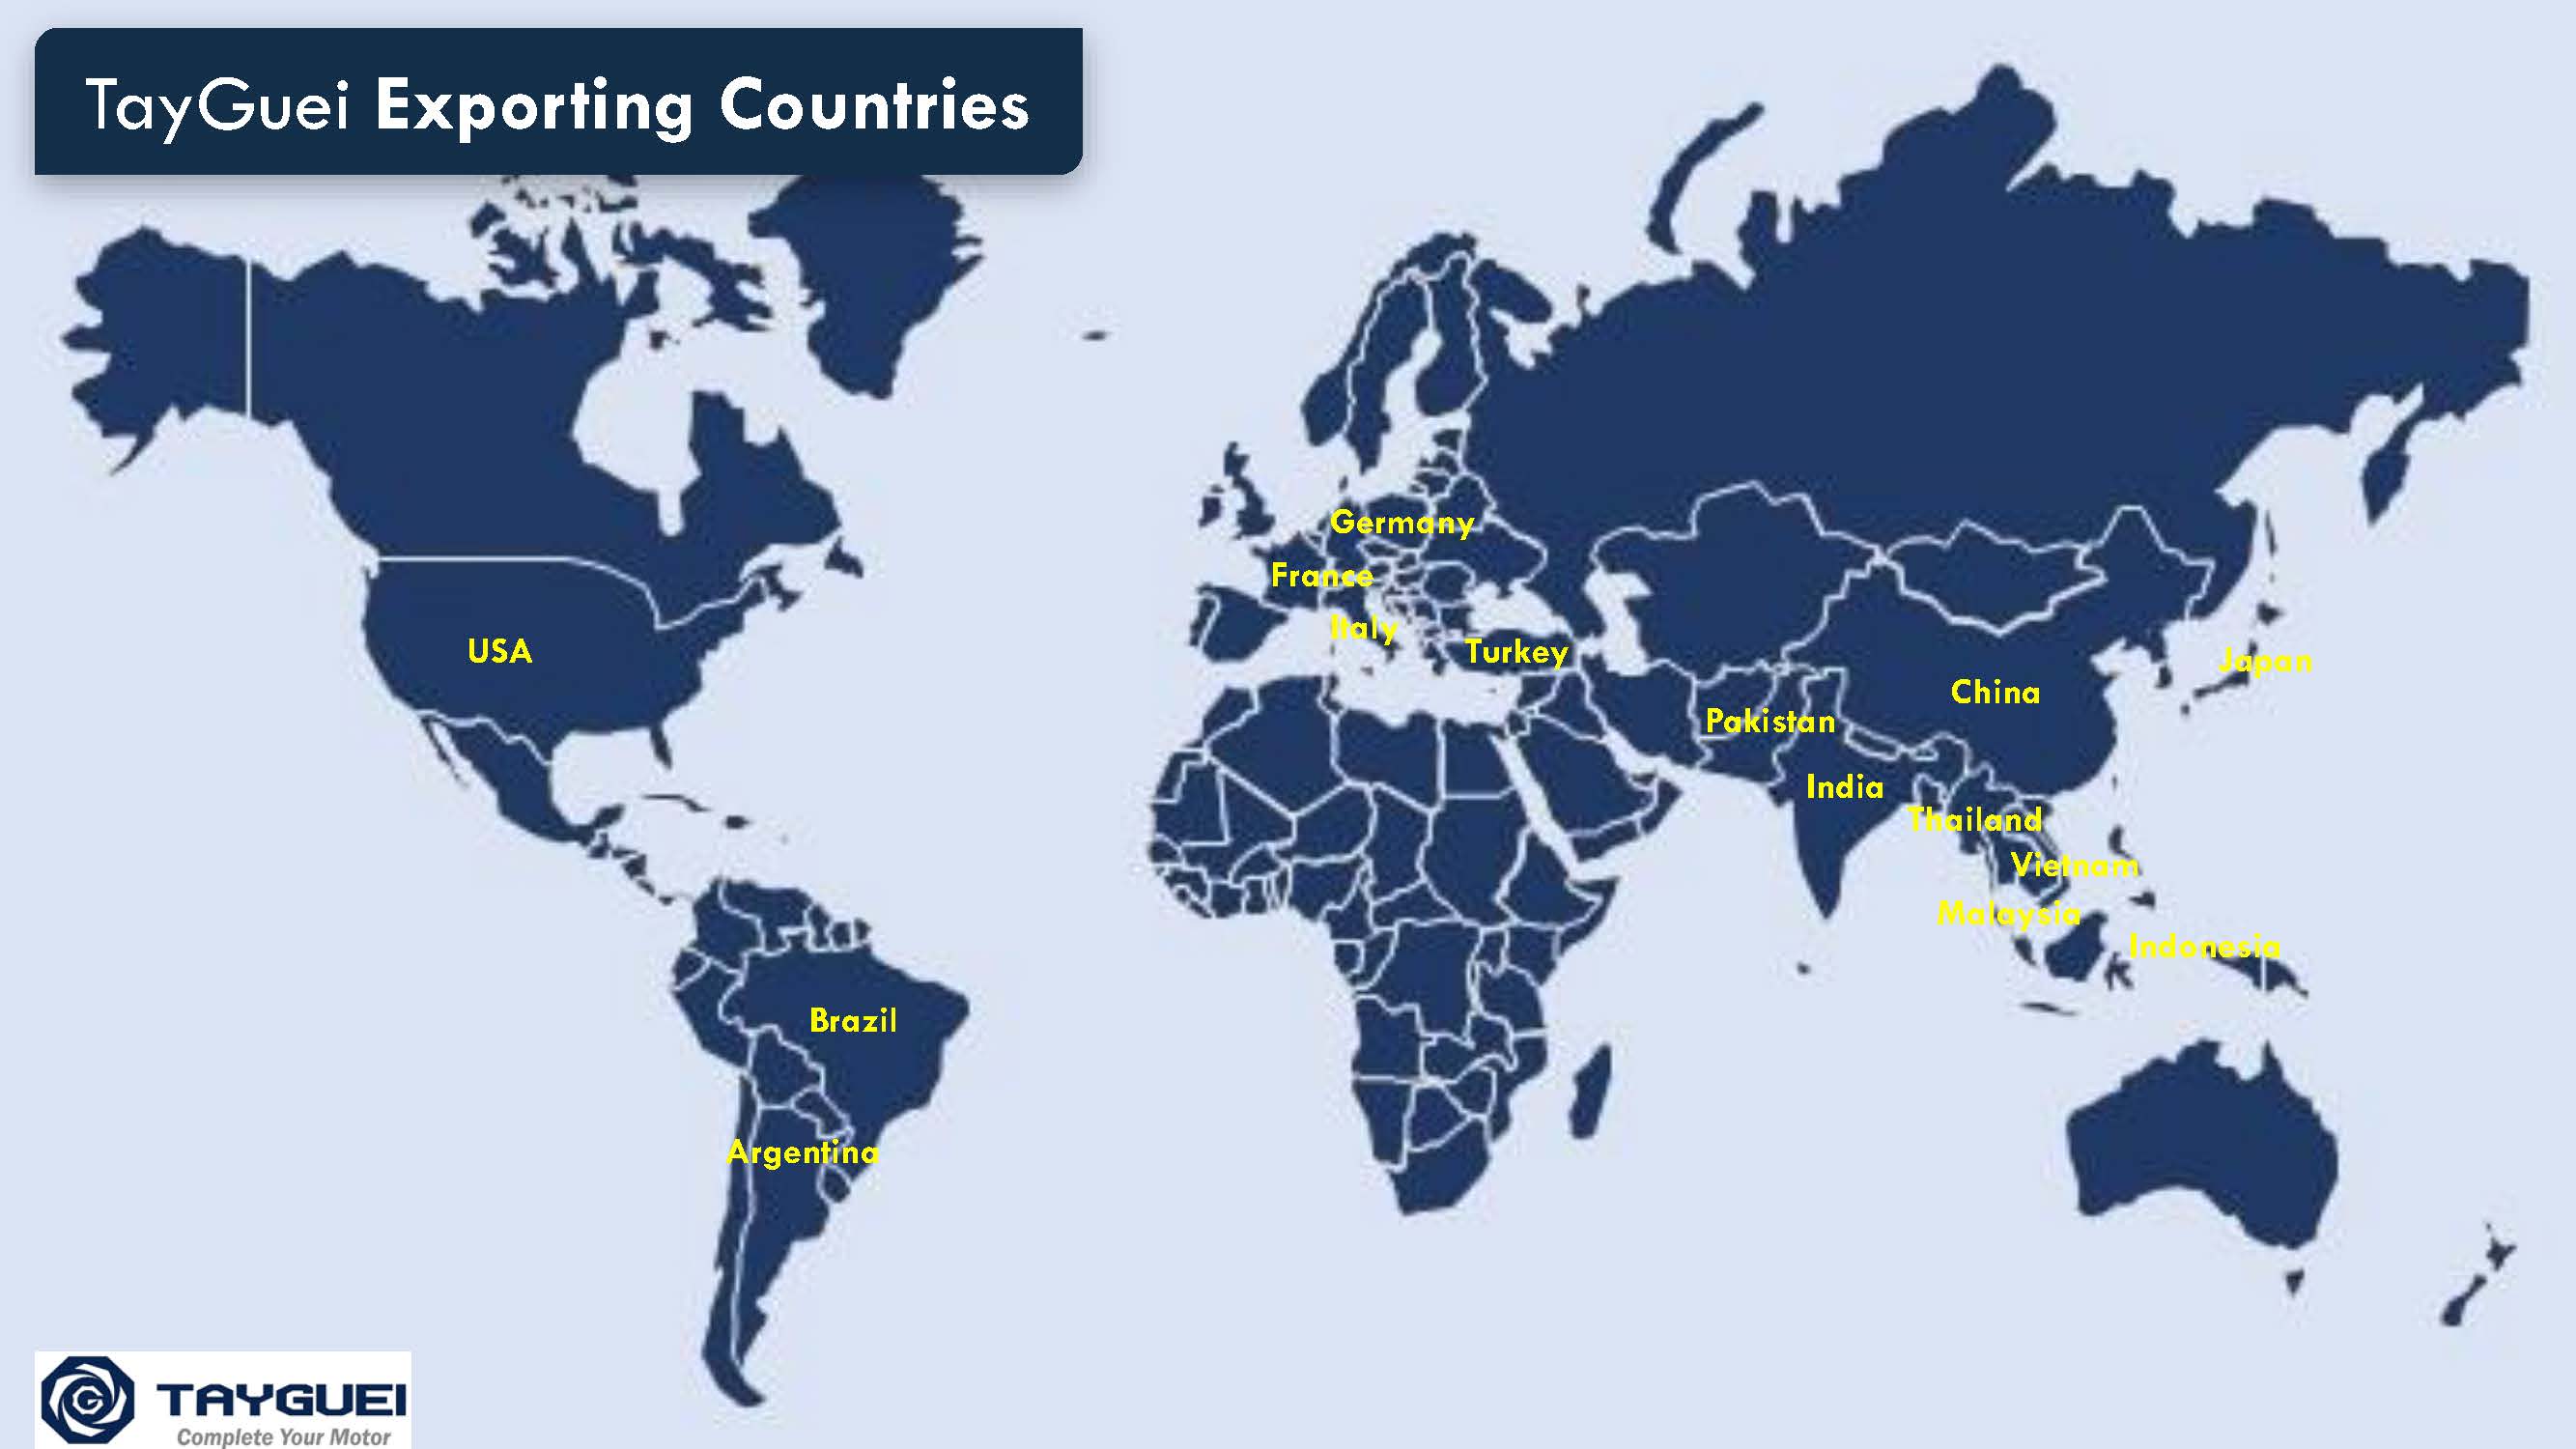 Il y a 15 pays à exporter.